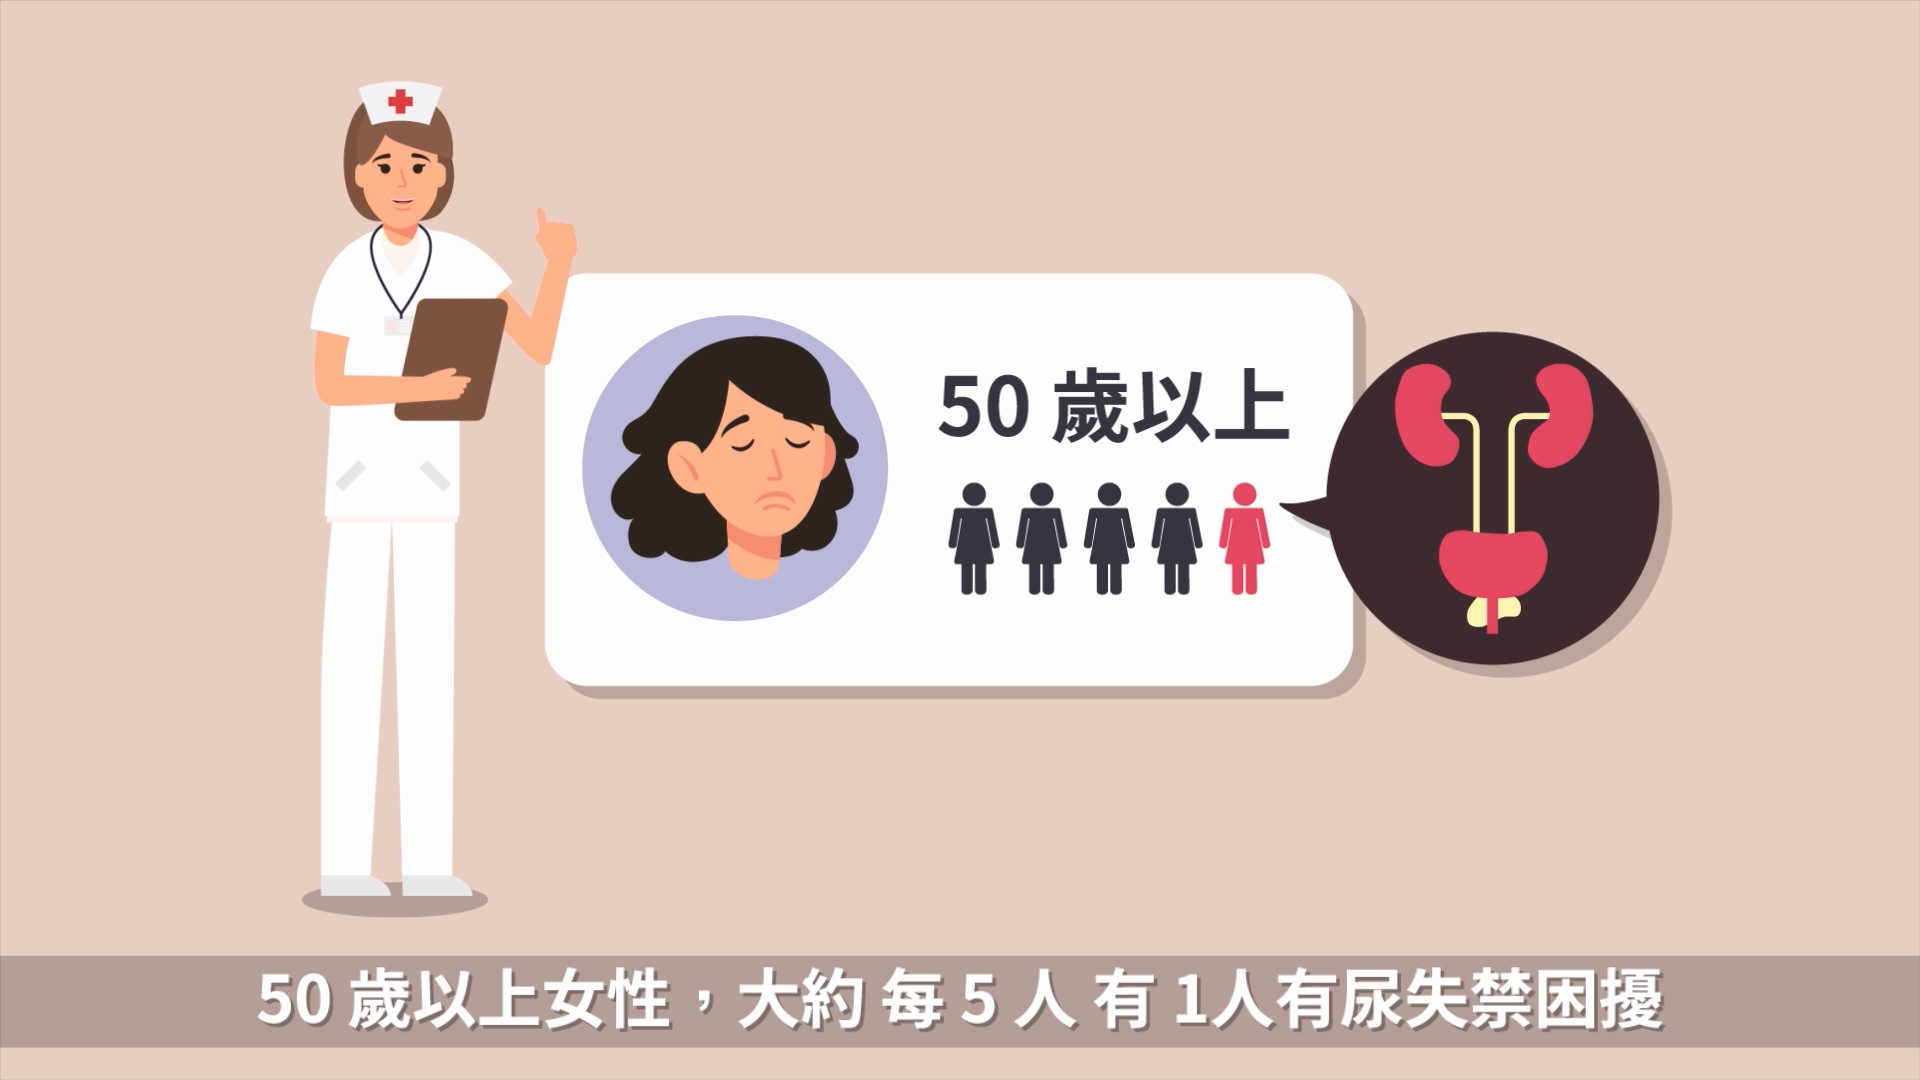 尿失禁防治症狀說明動畫篇(30秒)文章照片